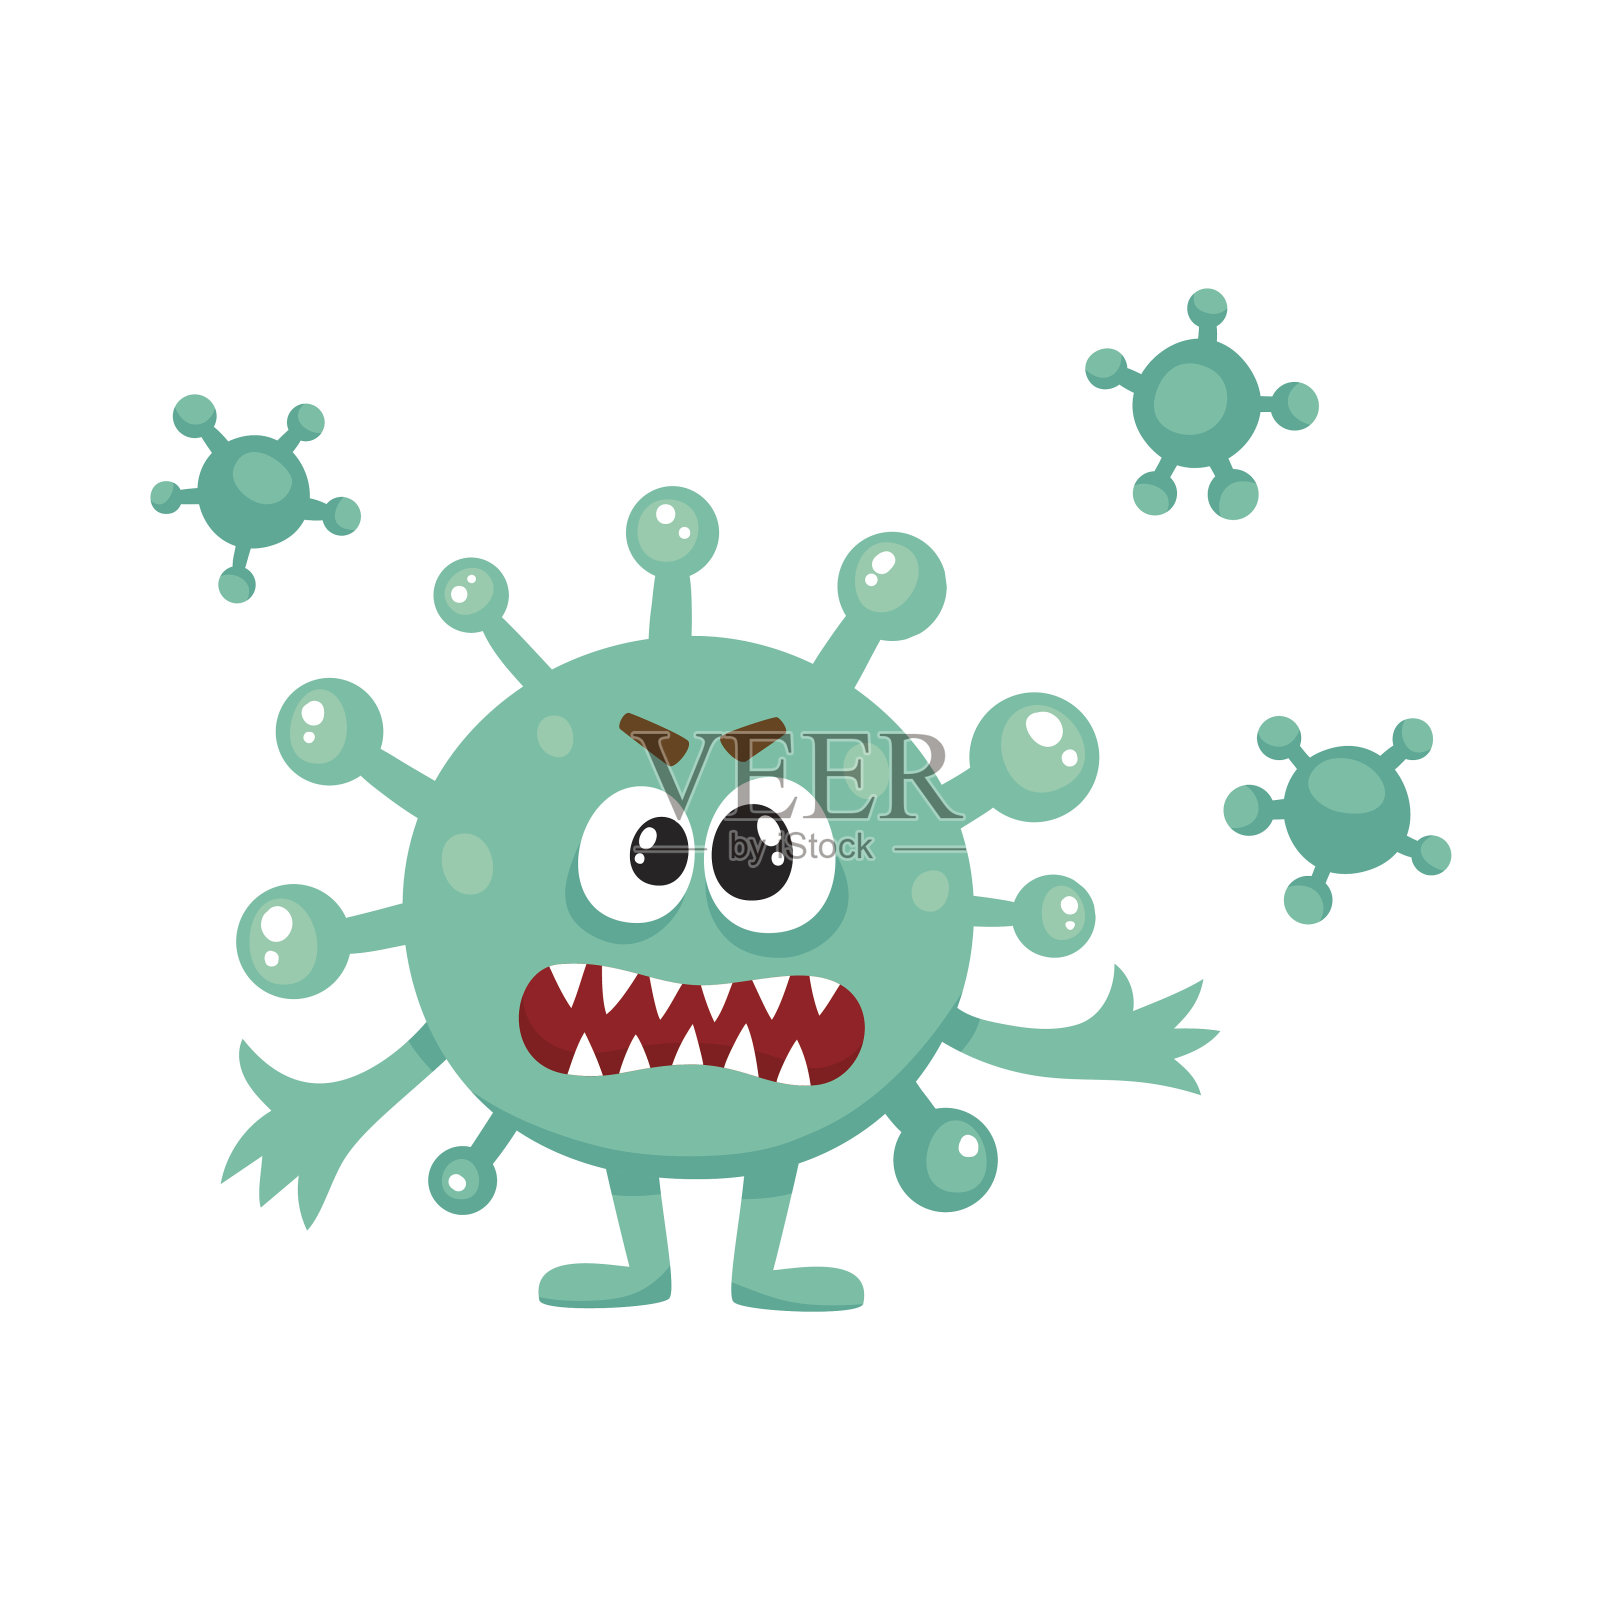 丑陋的绿色病毒、细菌、细菌具有人类面孔的特征设计元素图片